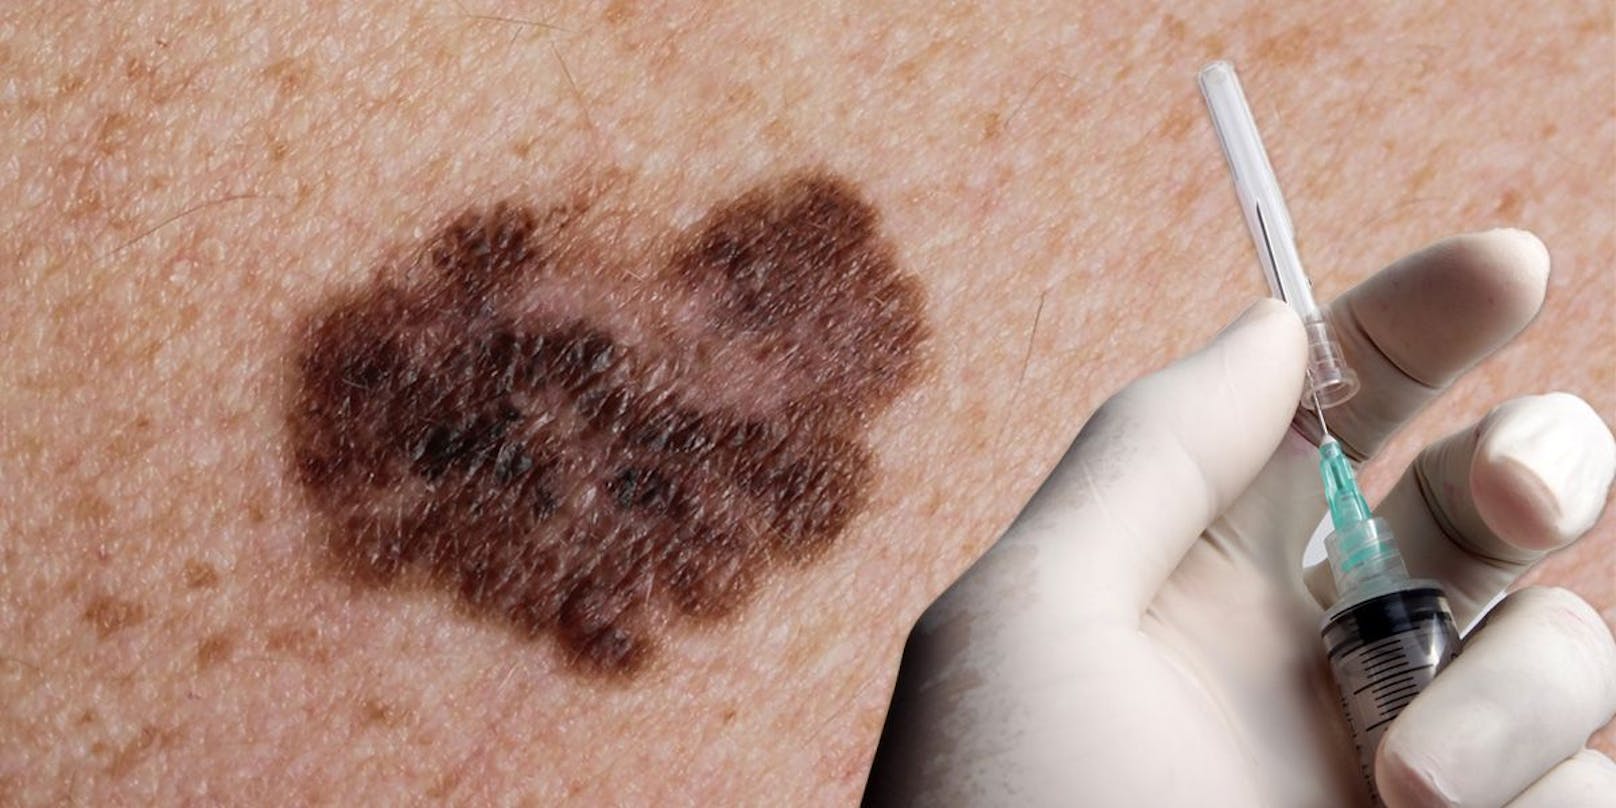 Das Melanom ("Schwarzer Hautkrebs") ist die gefährlichste Hautkrebsart. (Symbolbild).